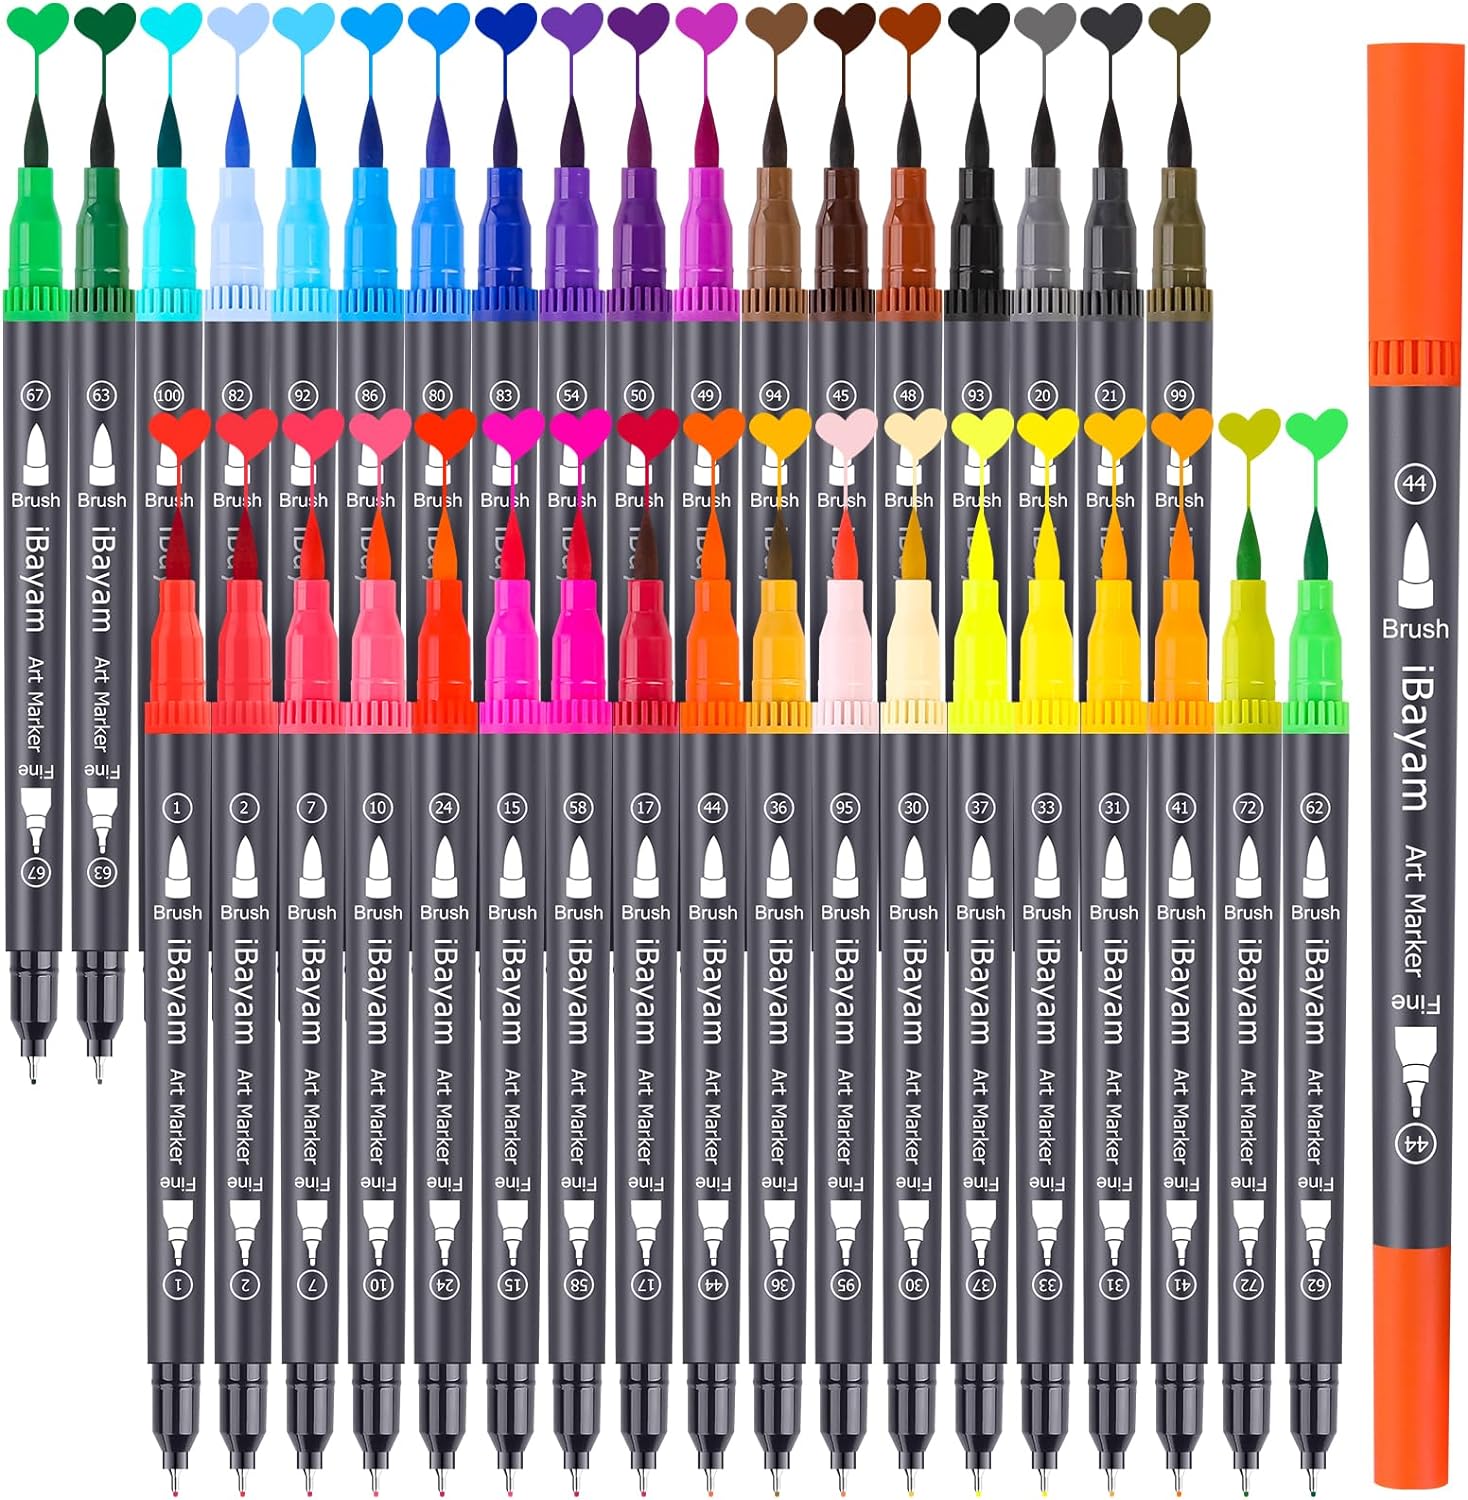 Mogyann 100 Gel Pen Set, Unique Colors Art Markers Pens for Adult Colo